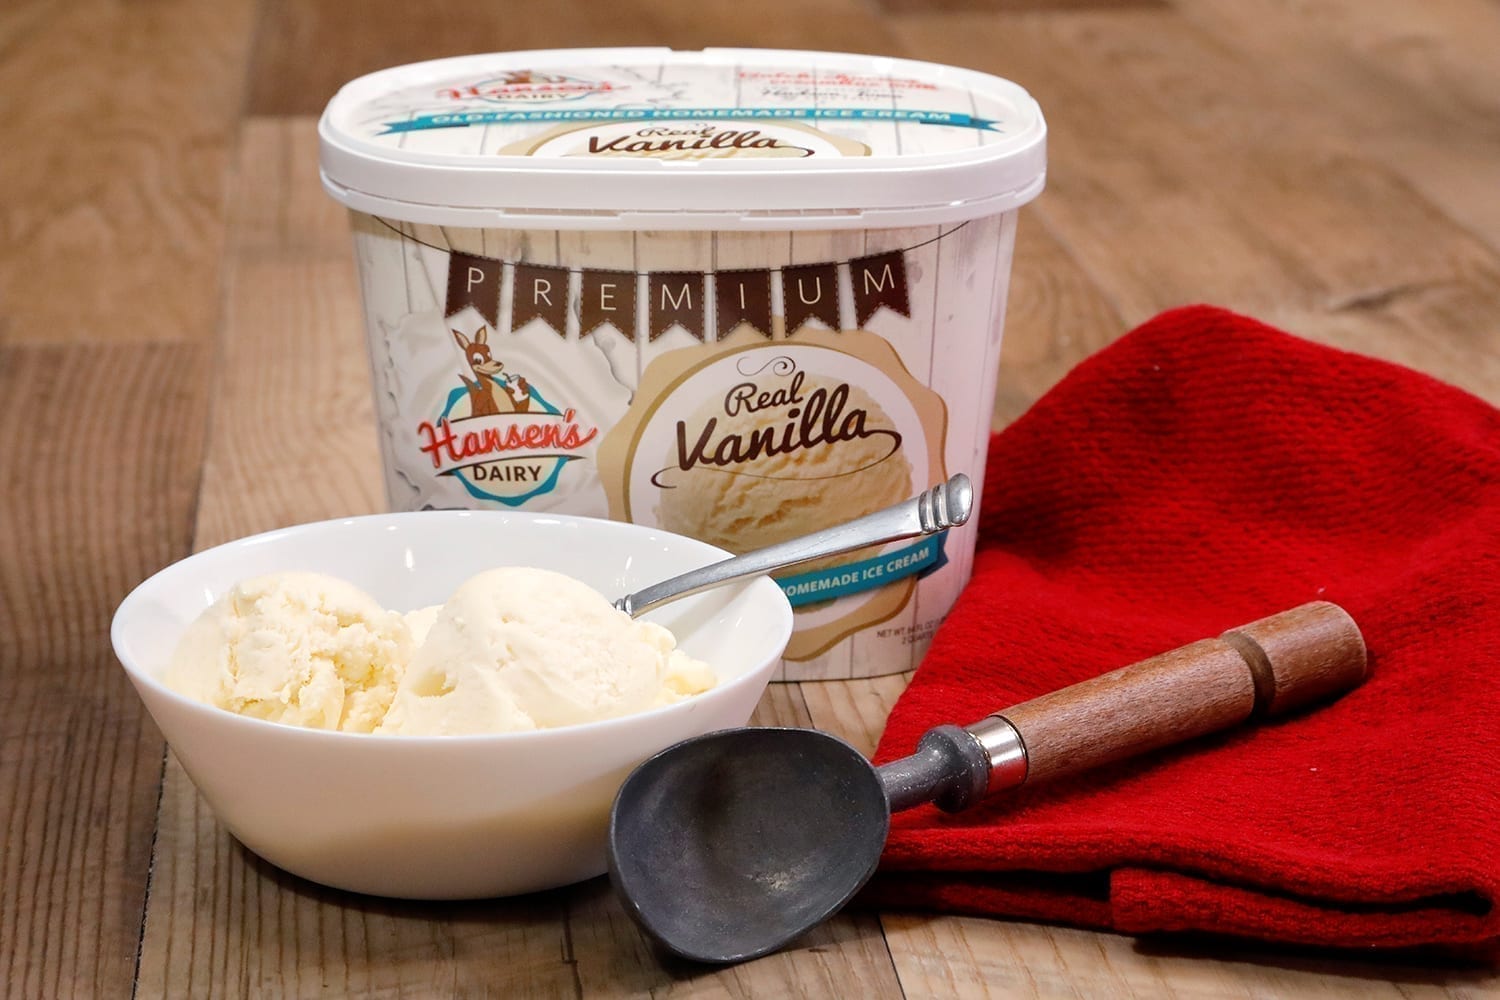 Hansen's Dairy vanilla ice cream